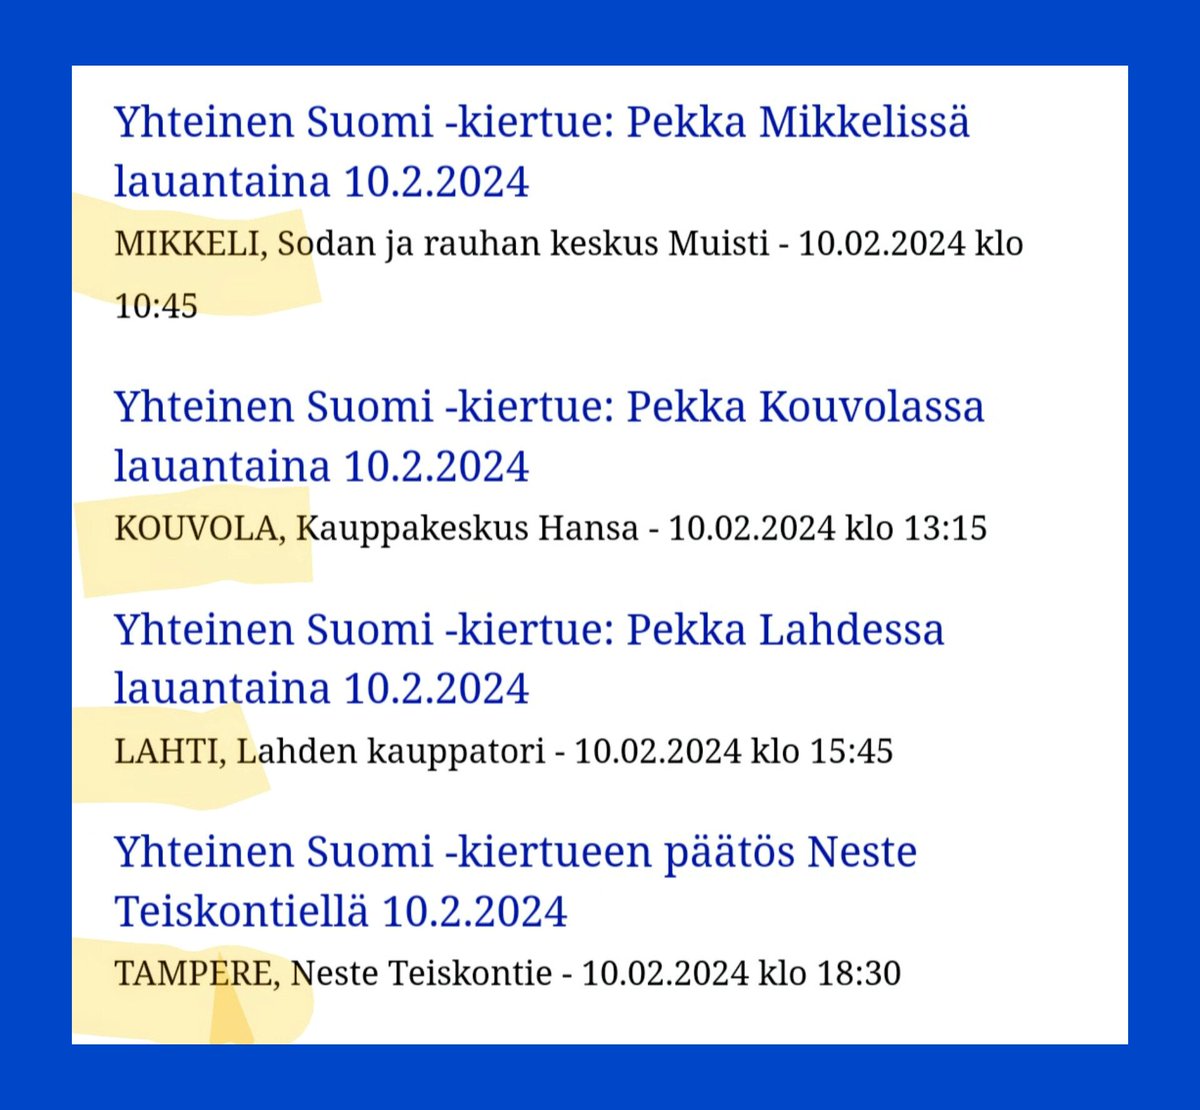 #YhteinenSuomi 🇫🇮@haavisto -kiertue lauantaina 10.2. 👇Paikkakunnilla:
Mikkeli
Kouvola 
Lahti
Tampere! ✨🔟✨
#Presidentinvaalit